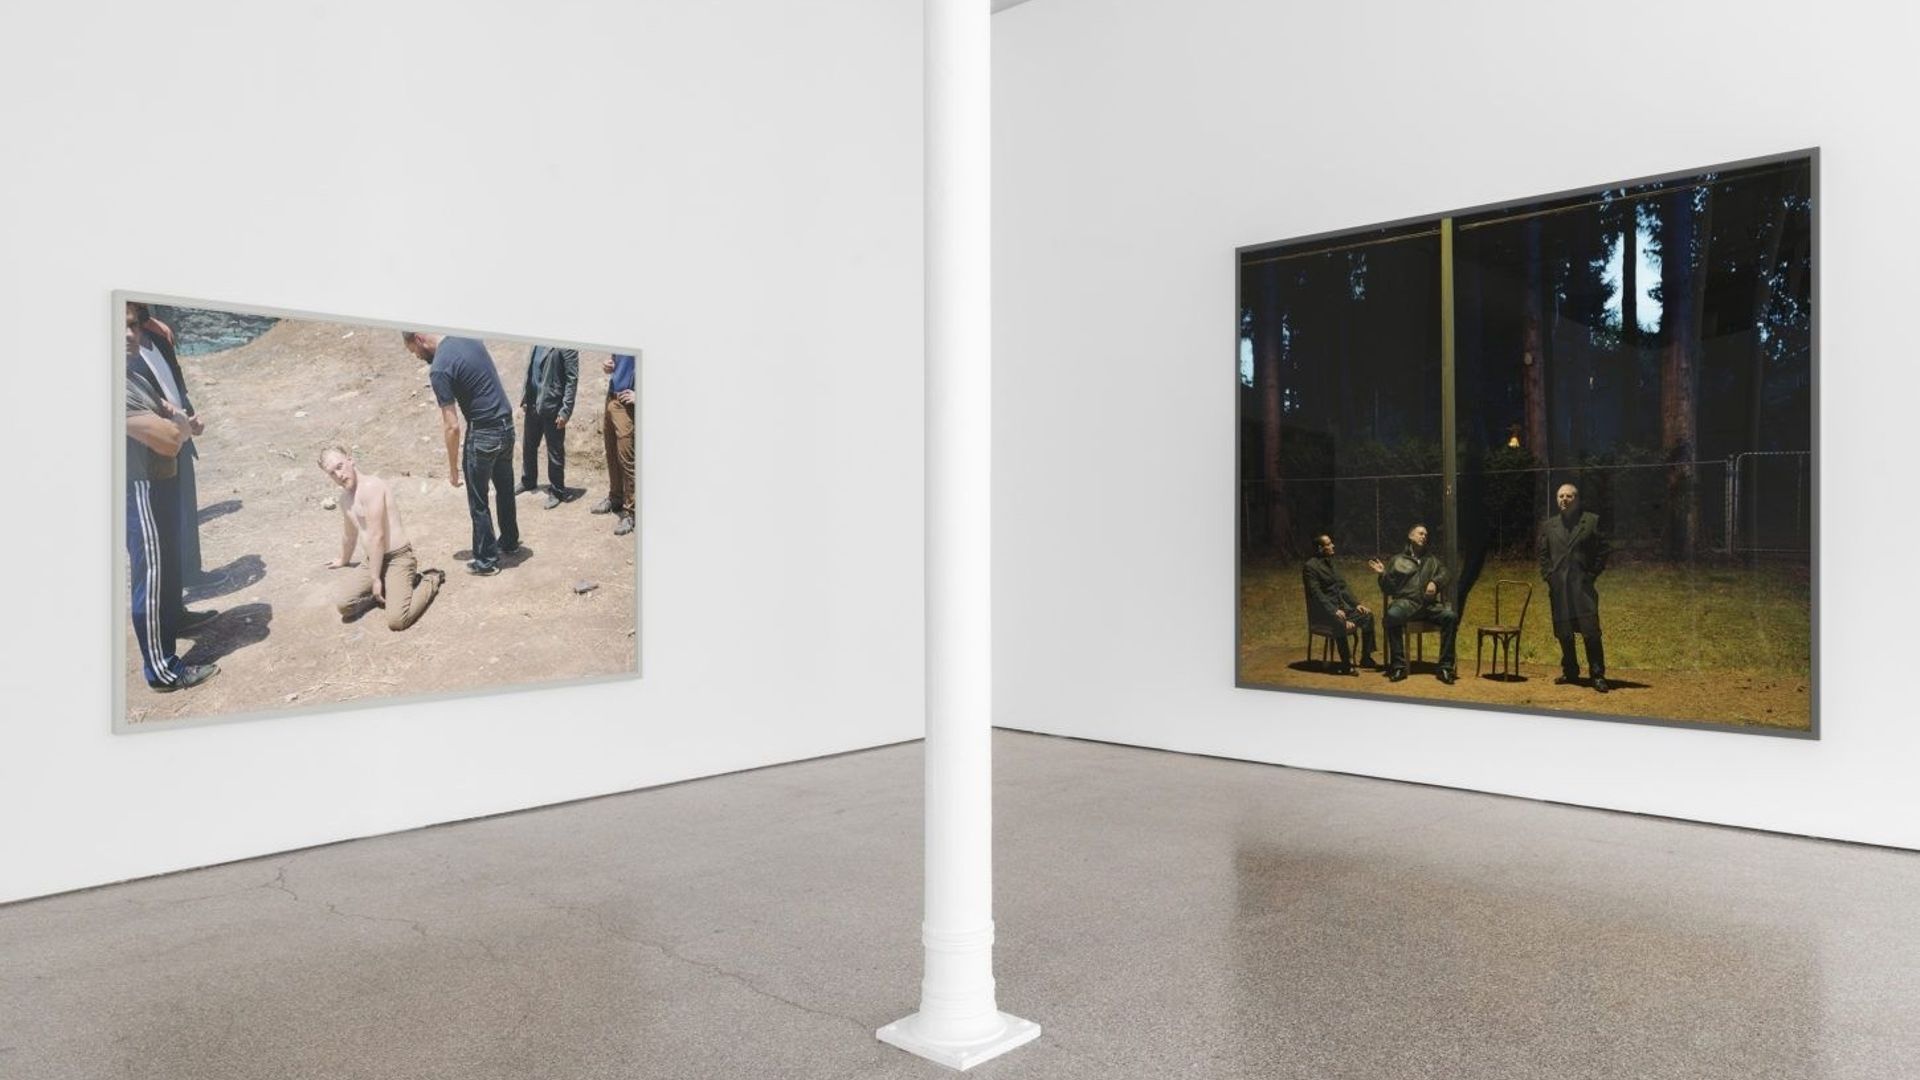 Jeff Wall présente ses images dans des formats imposants - Une des salles de la galerie Greta Meert  

